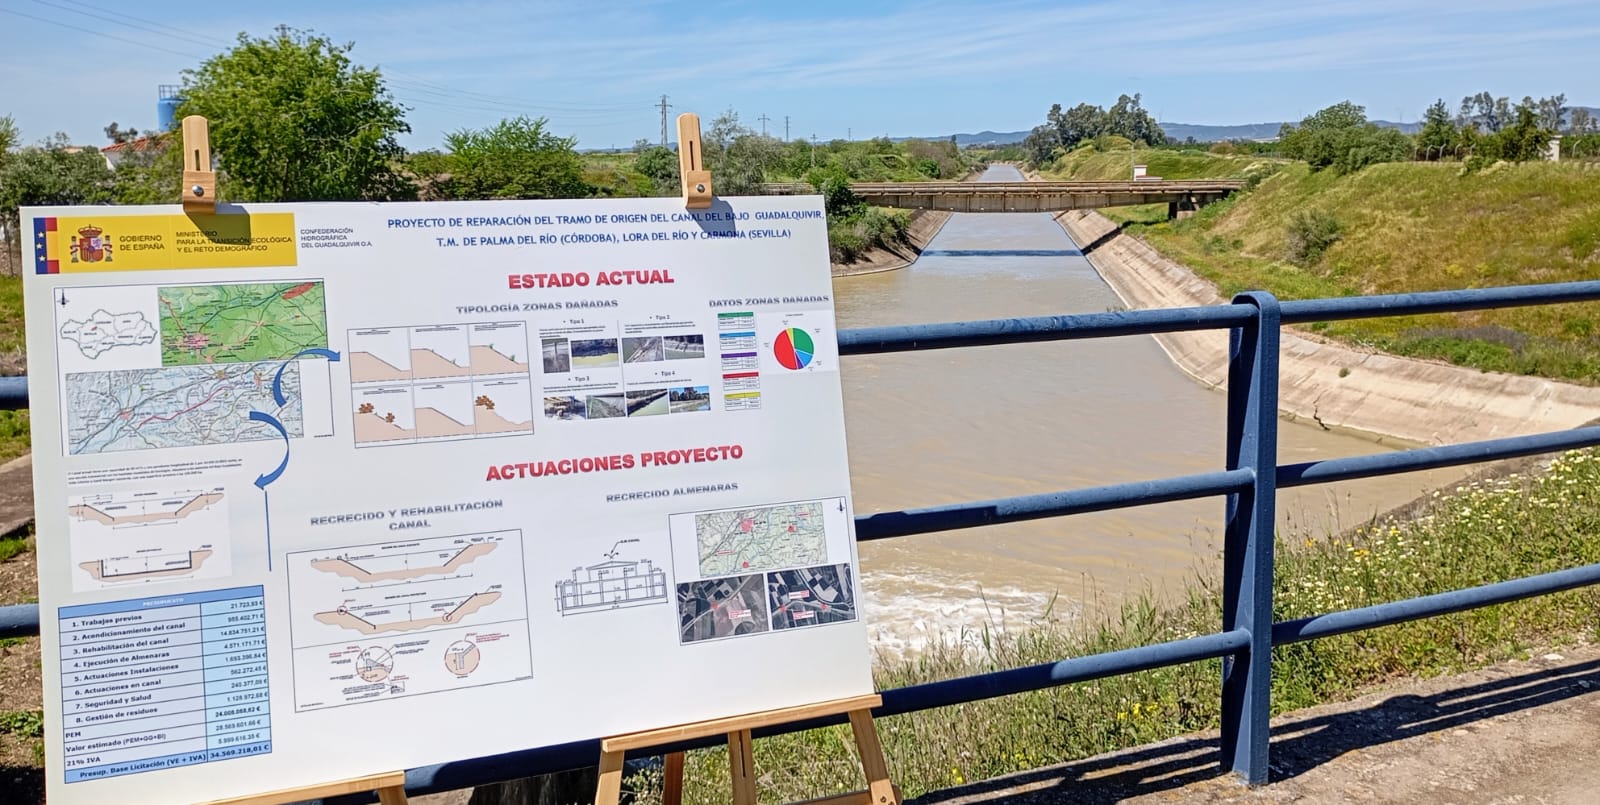 Inversión de 34,5 millones de euros en el tramo origen del Canal del Bajo Guadalquivir